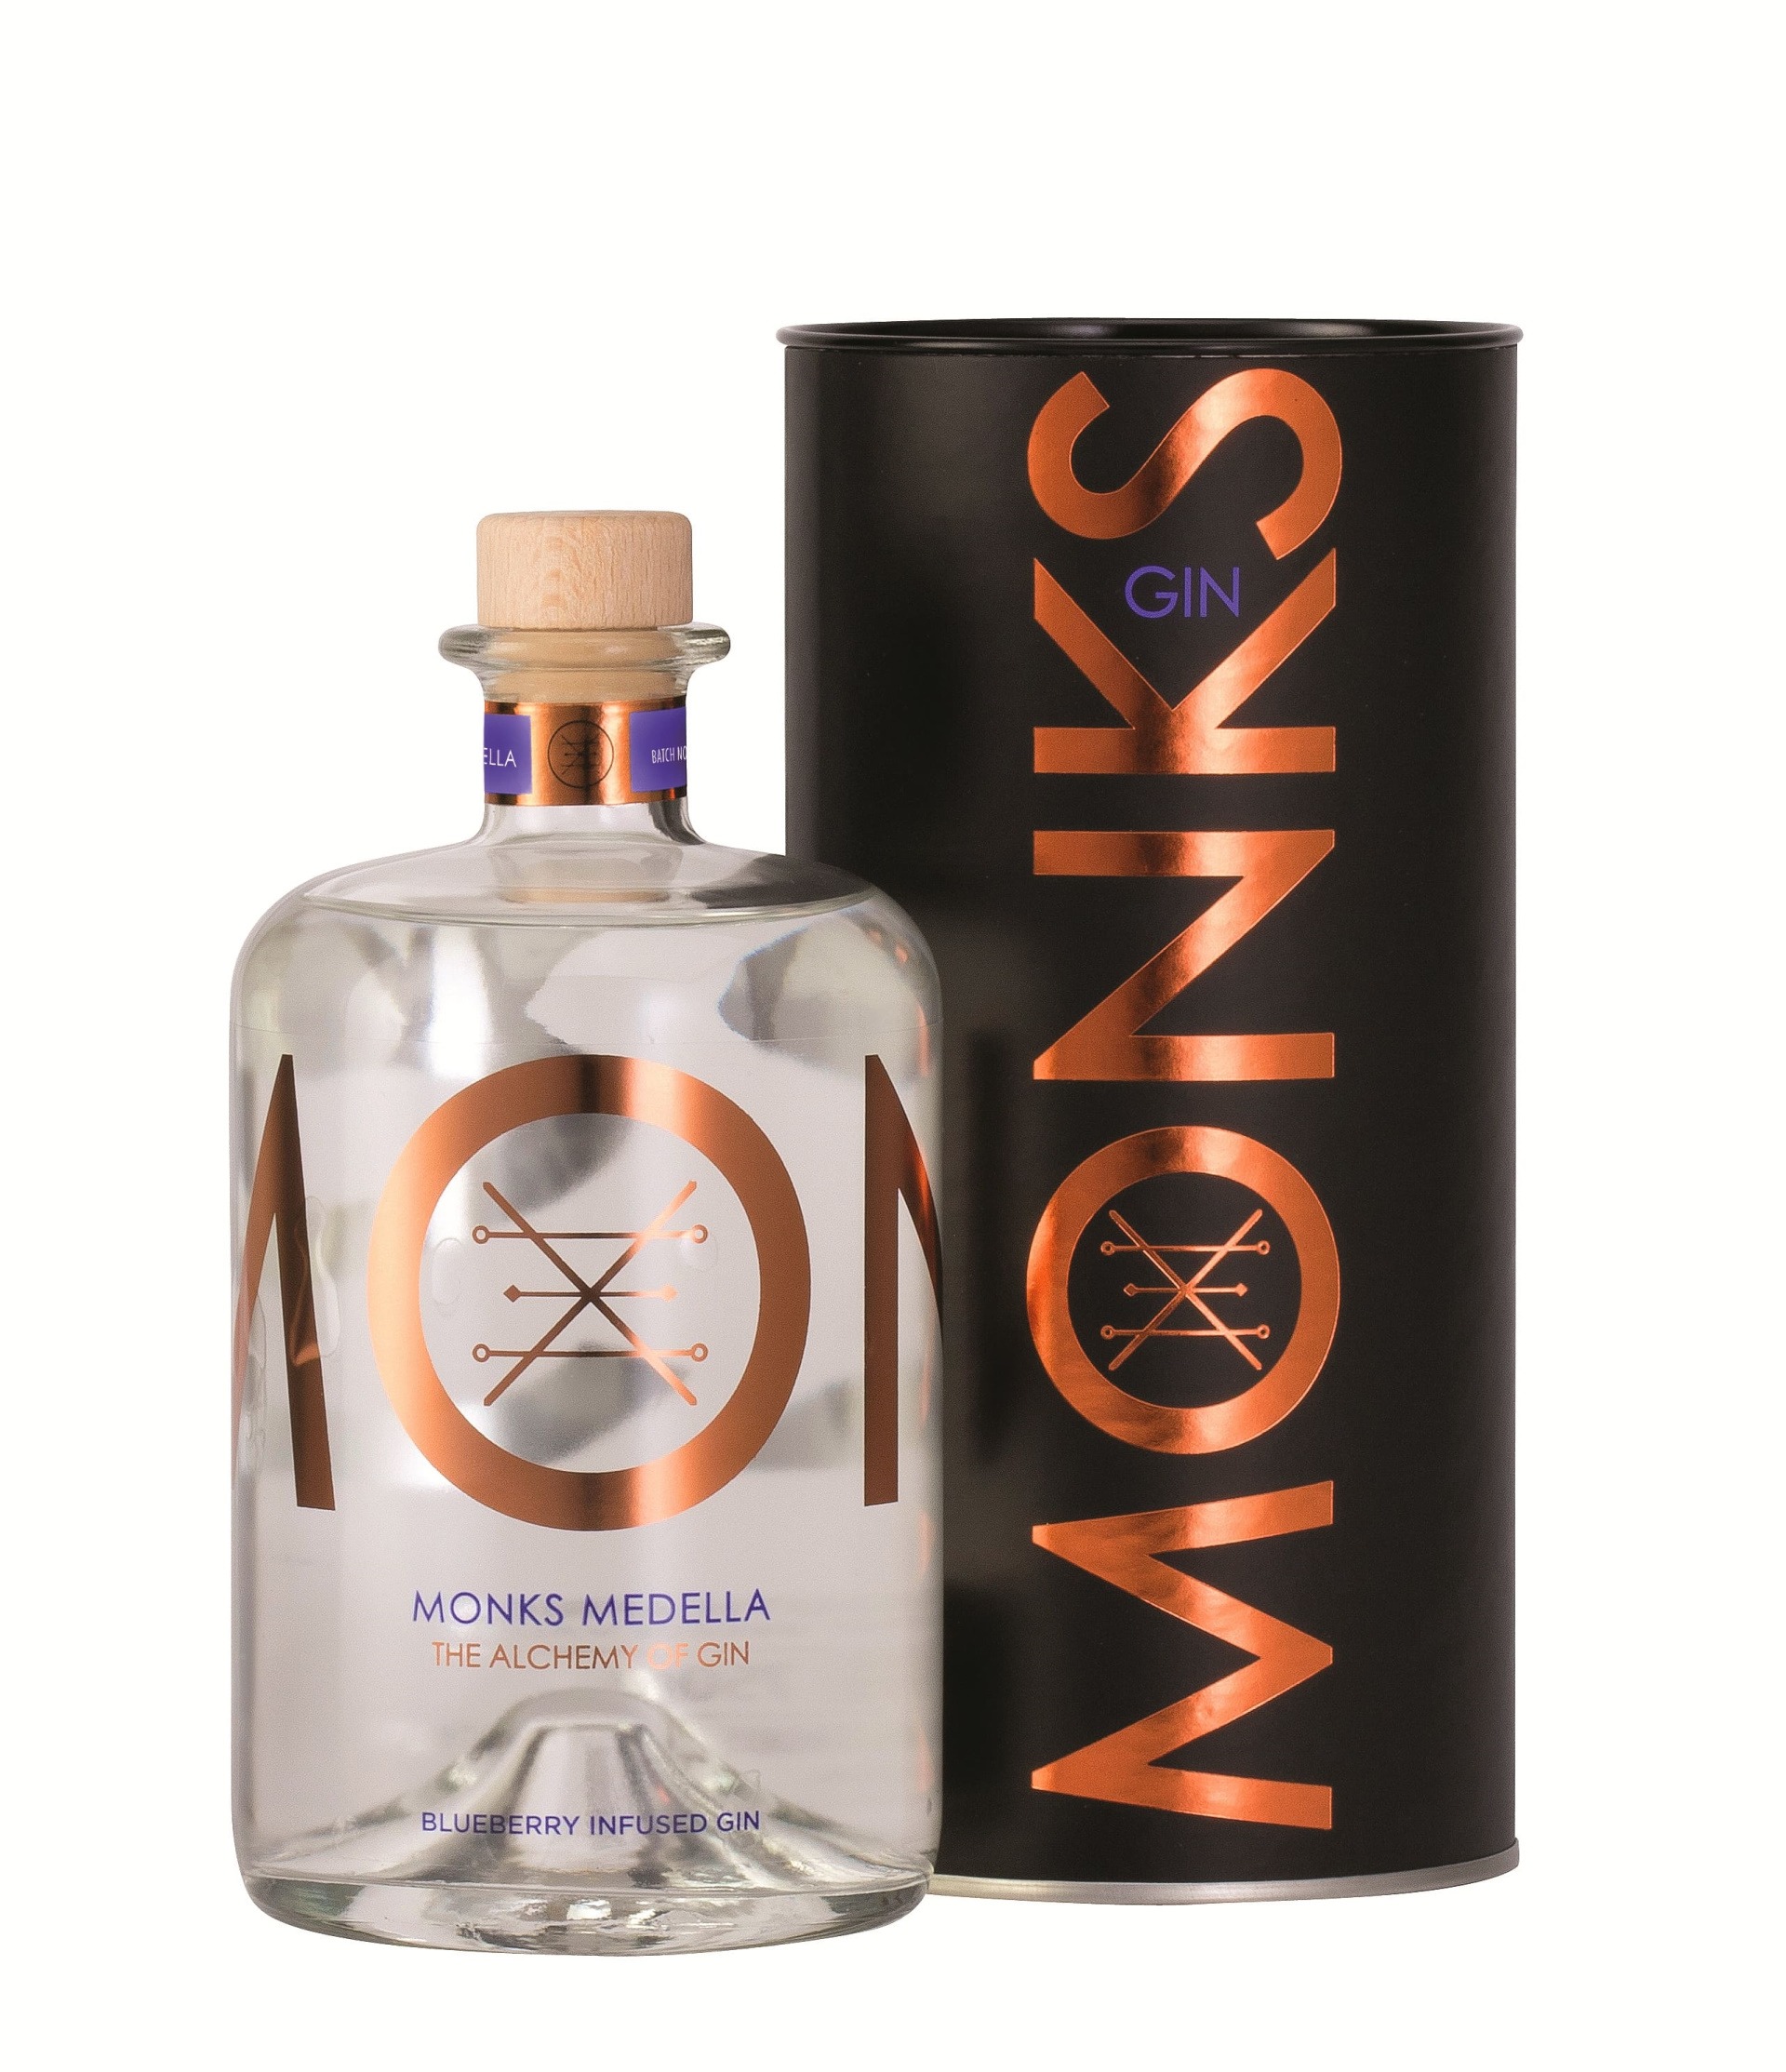 Bouteille de Gin Monks parfum Medella avec son packaging